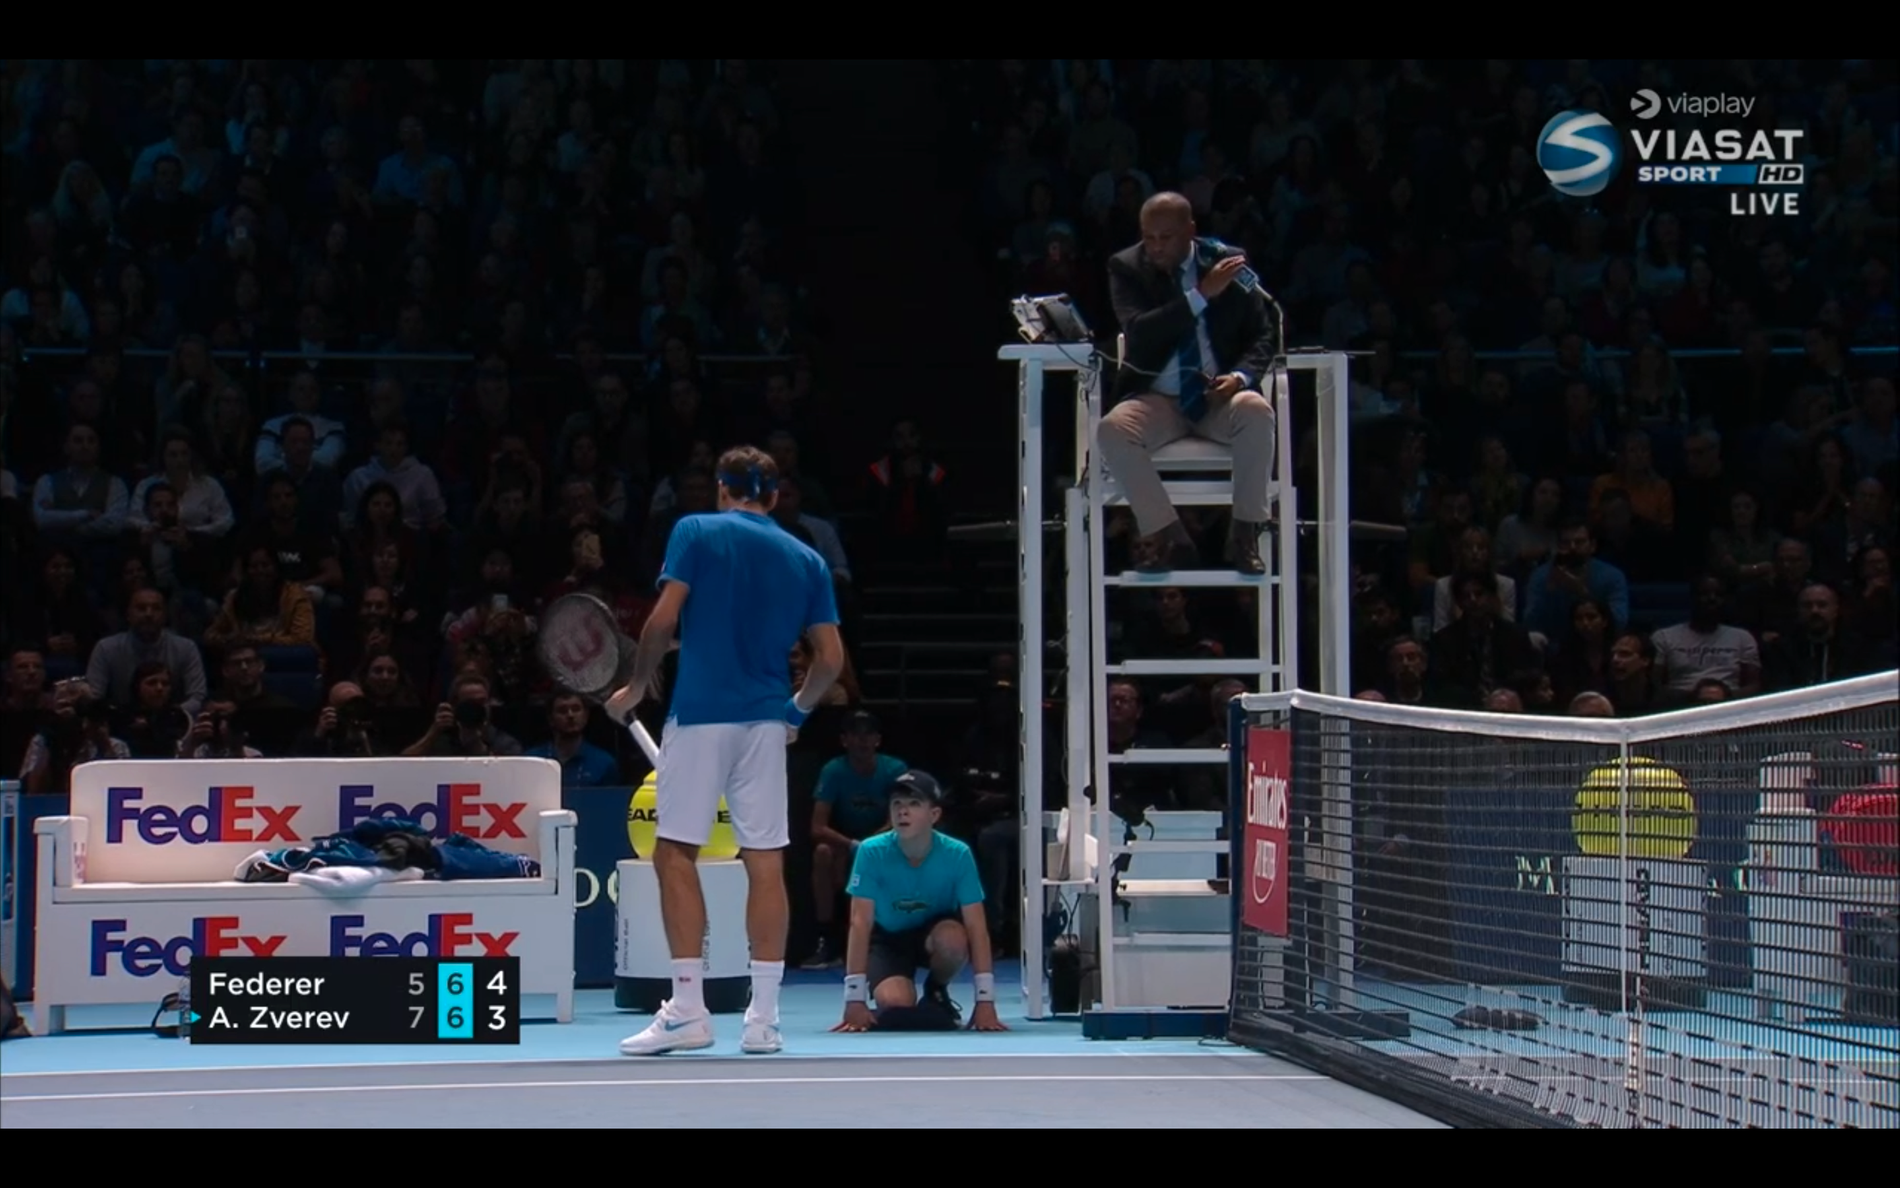 Federer var framme och pratade med domaren och bollkallen.